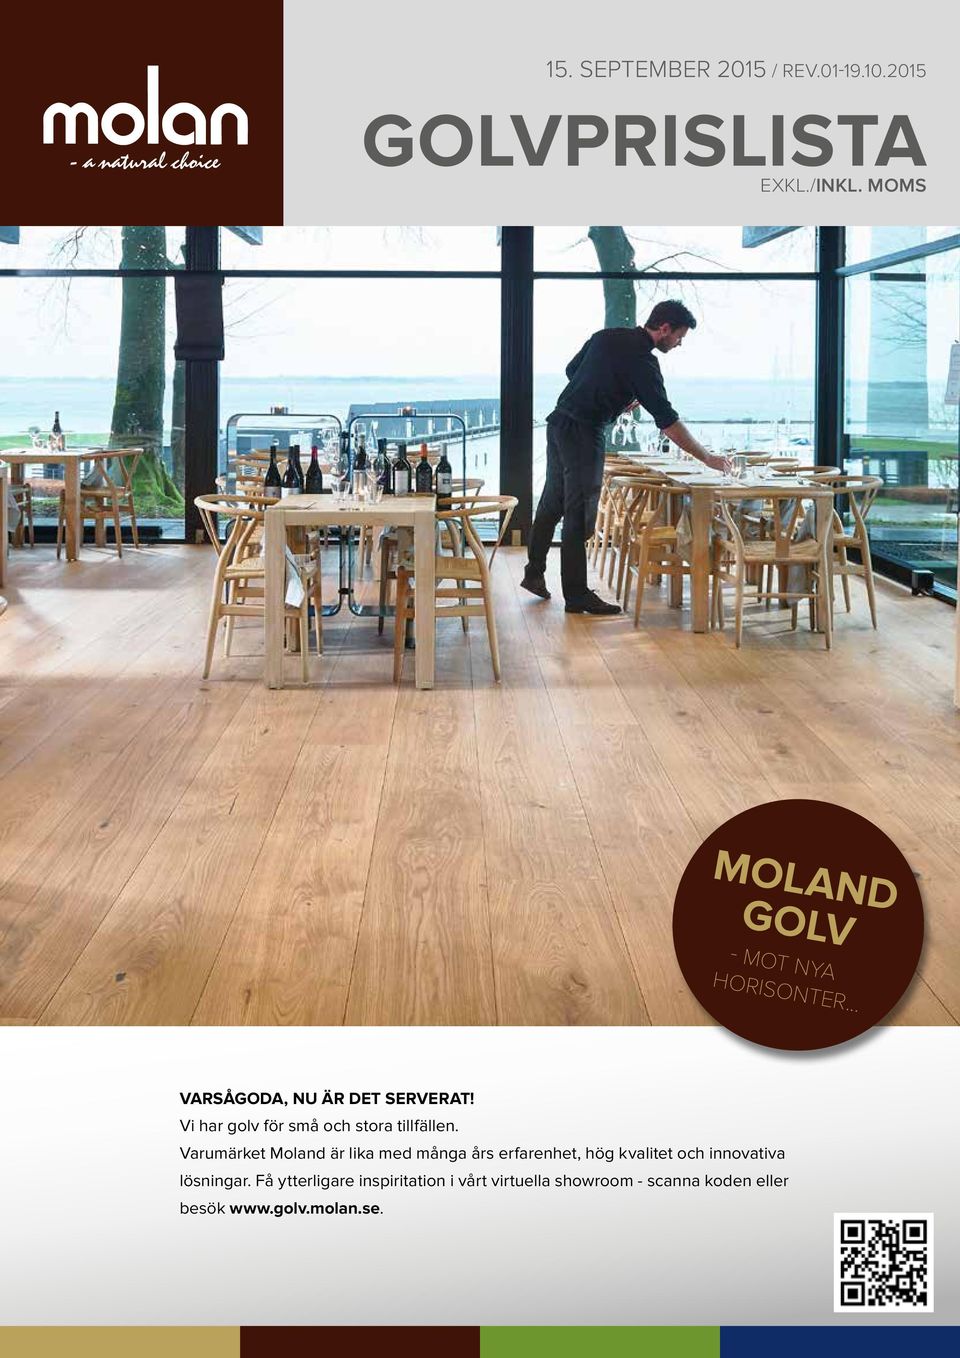 Varumärket Moland är lika med många års erfarenhet, hög kvalitet och innovativa